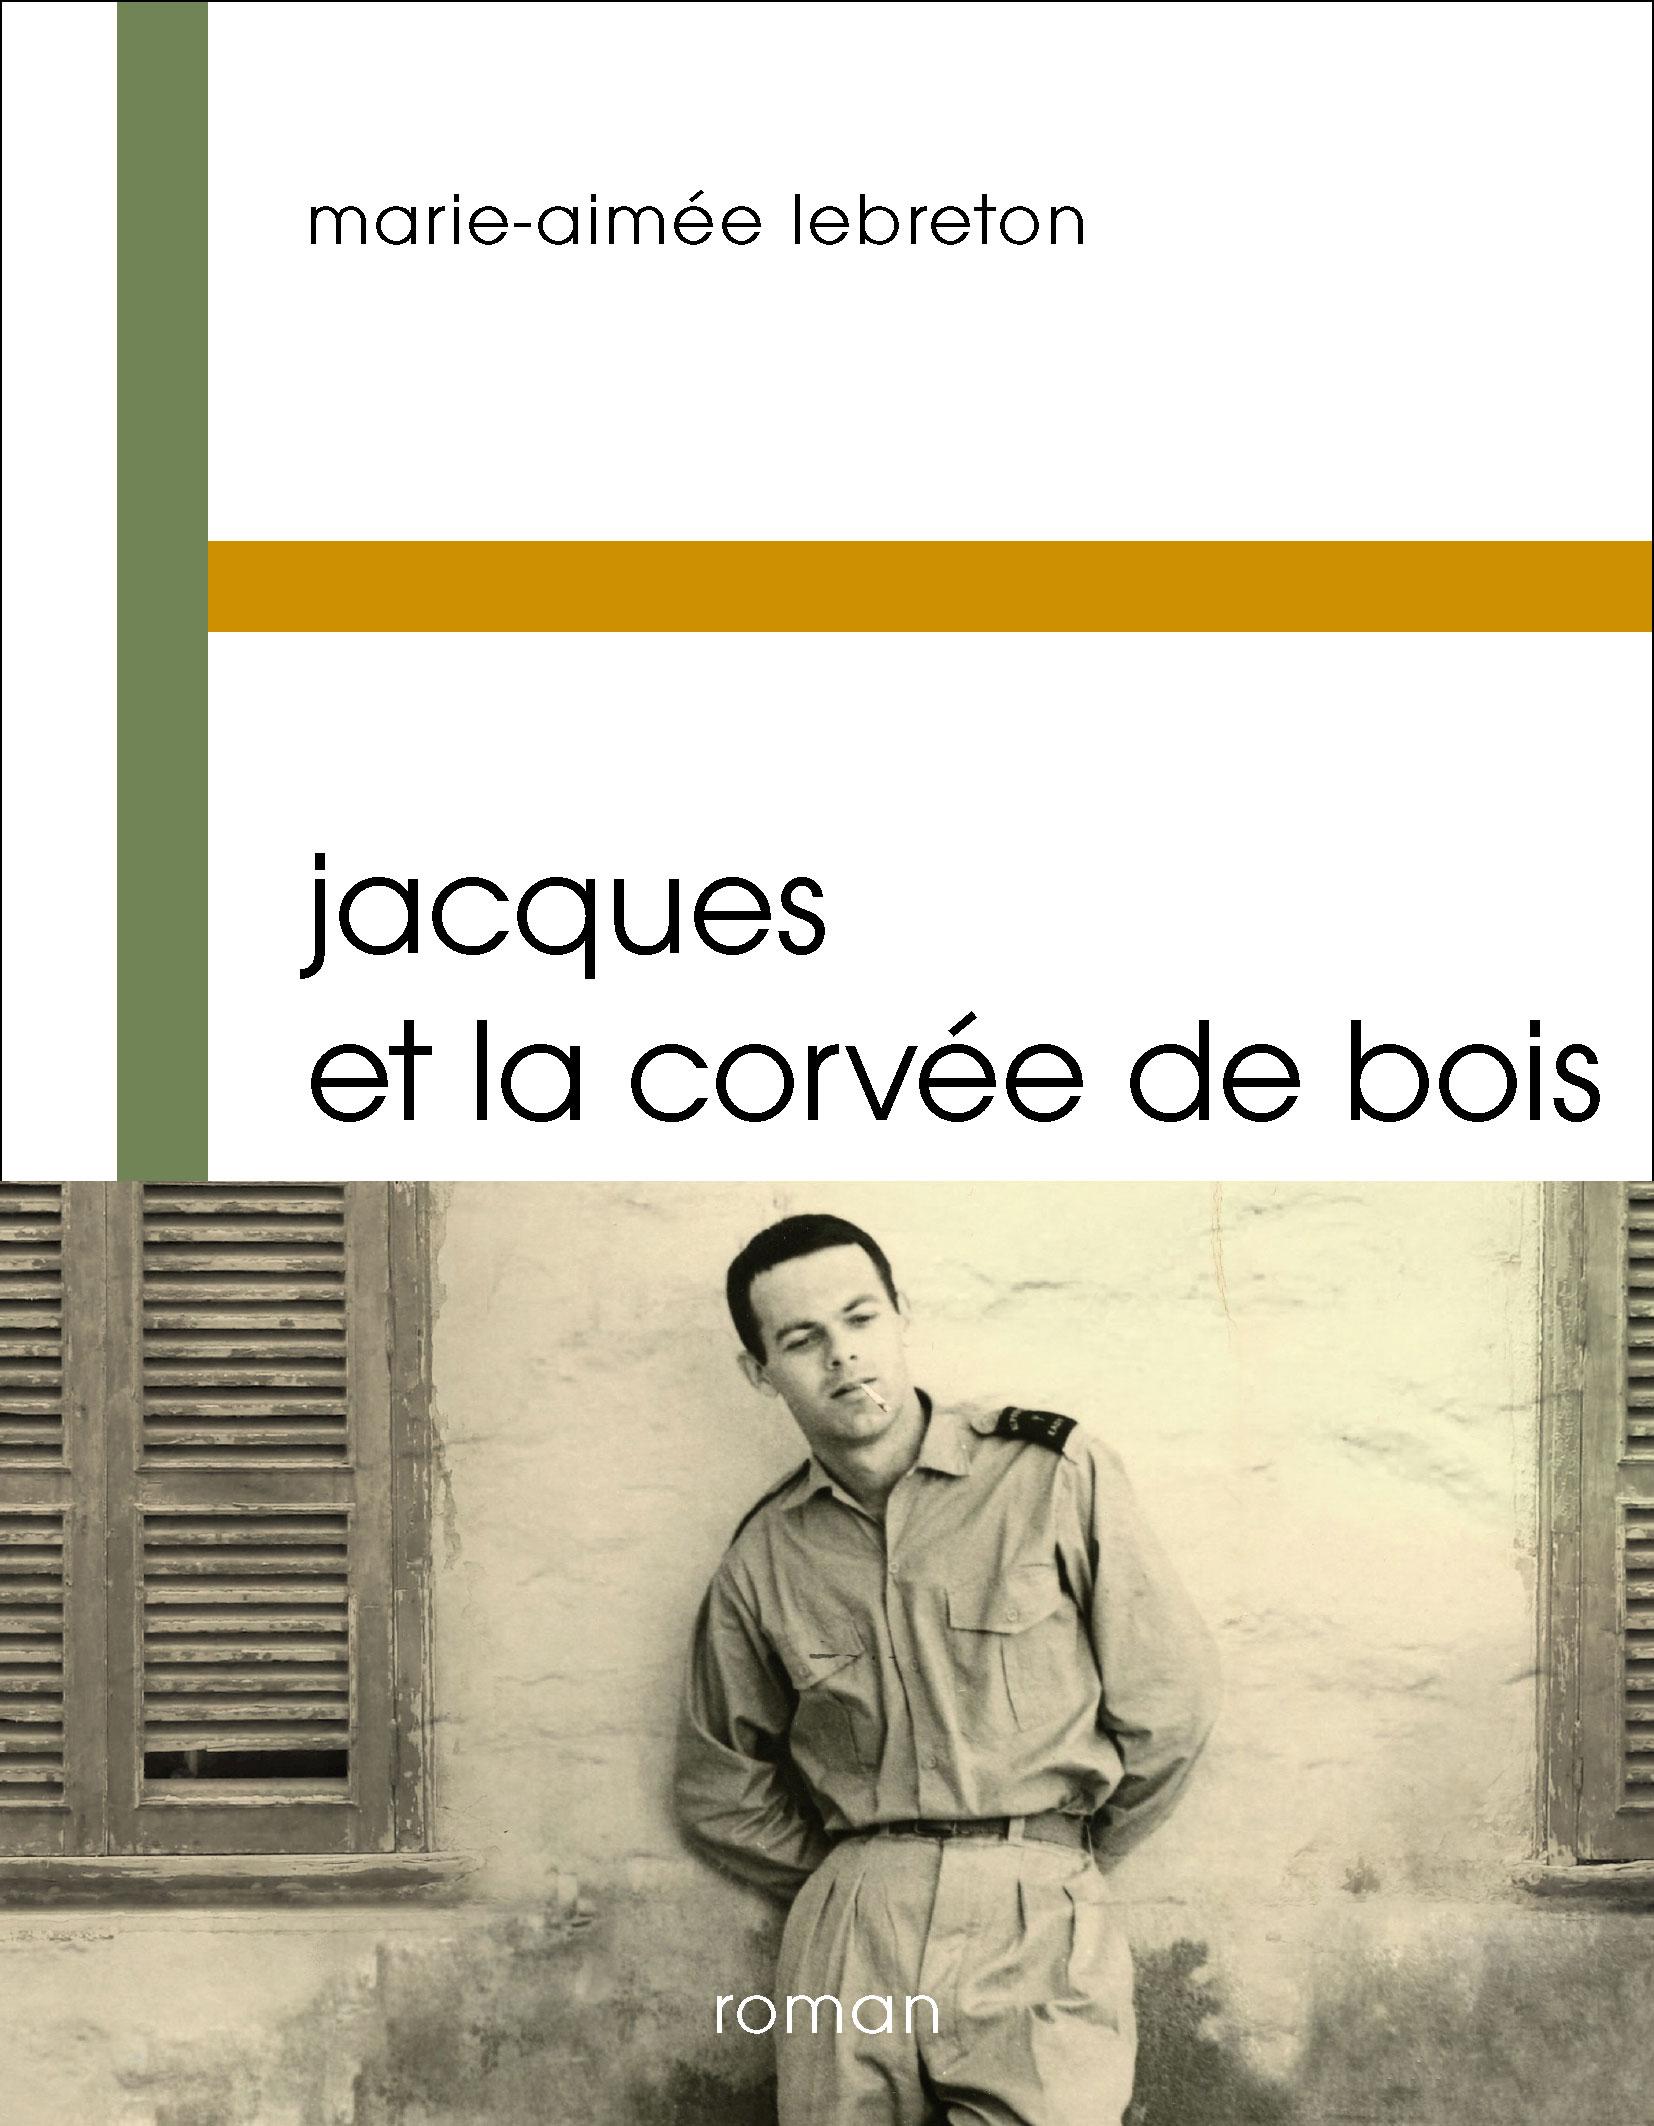 La couverture du livre "Jacques et la corvée de bois" de Marie-Aimée Lebreton.